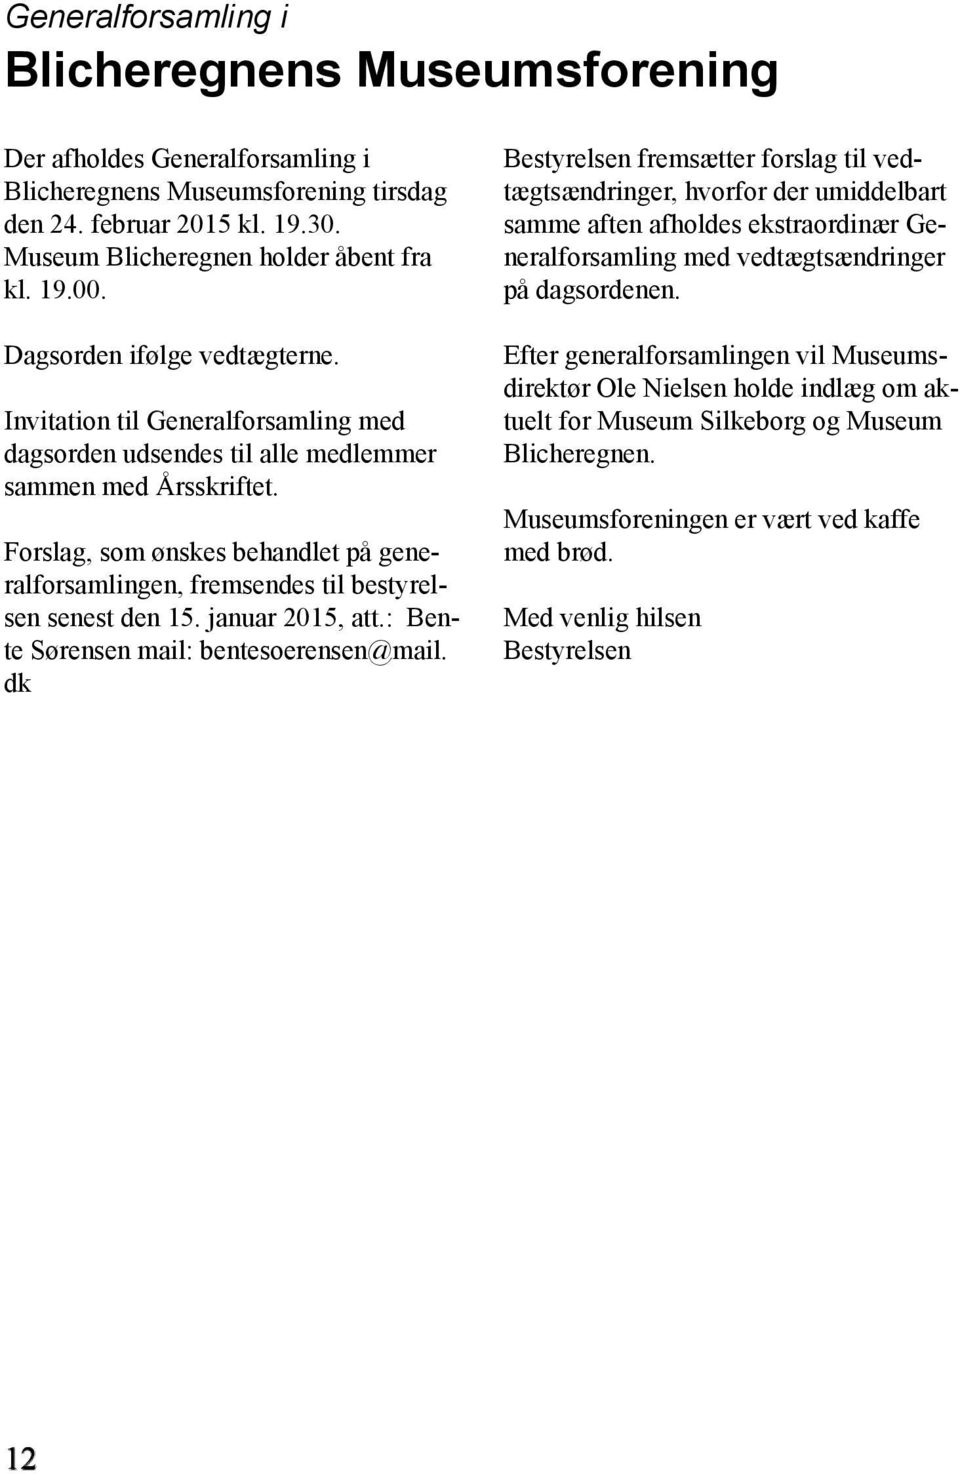 Forslag, som ønskes behandlet på generalforsamlingen, fremsendes til bestyrelsen senest den 15. januar 2015, att.: Bente Sørensen mail: bentesoerensen@mail.